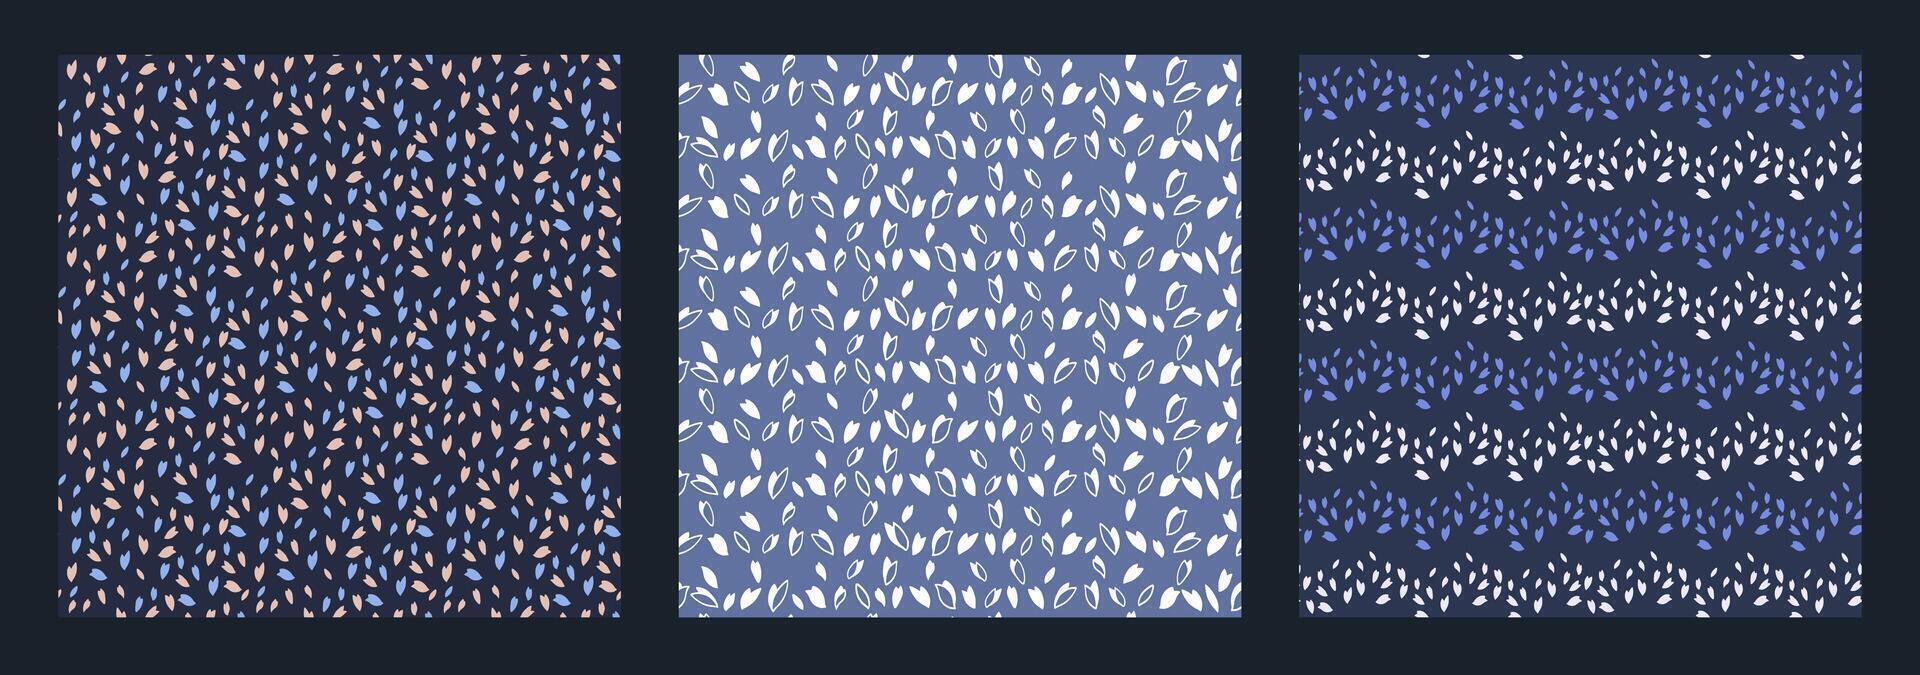 conjunto do abstrato quadrado padrões com formas polca pontos, gotas, losango, ziguezagues, listrado. mão desenhado esboço. na moda azul simples fundos texturas. modelos para projeto, têxtil, impressão vetor